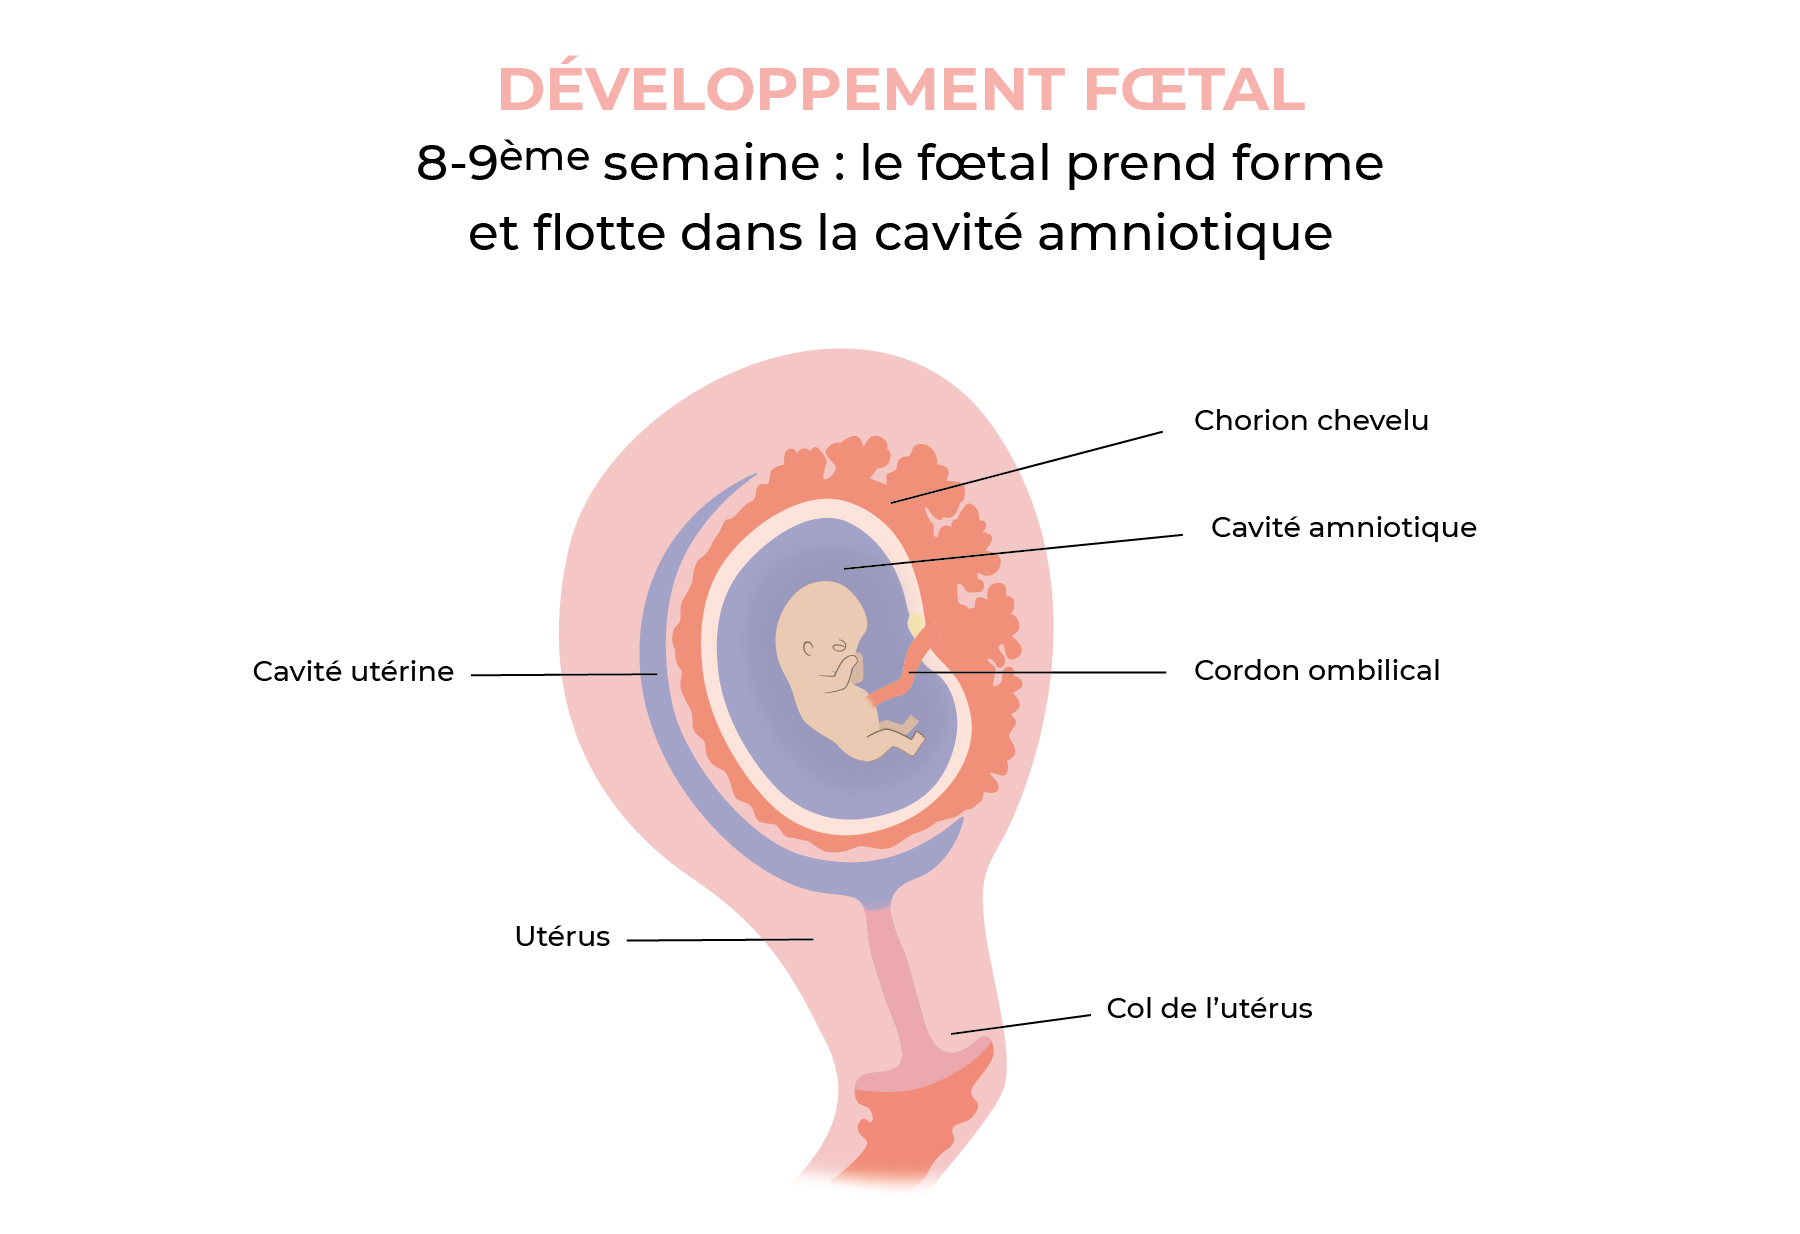 8-9ème semaine : foetus au sein de la cavité amniotique